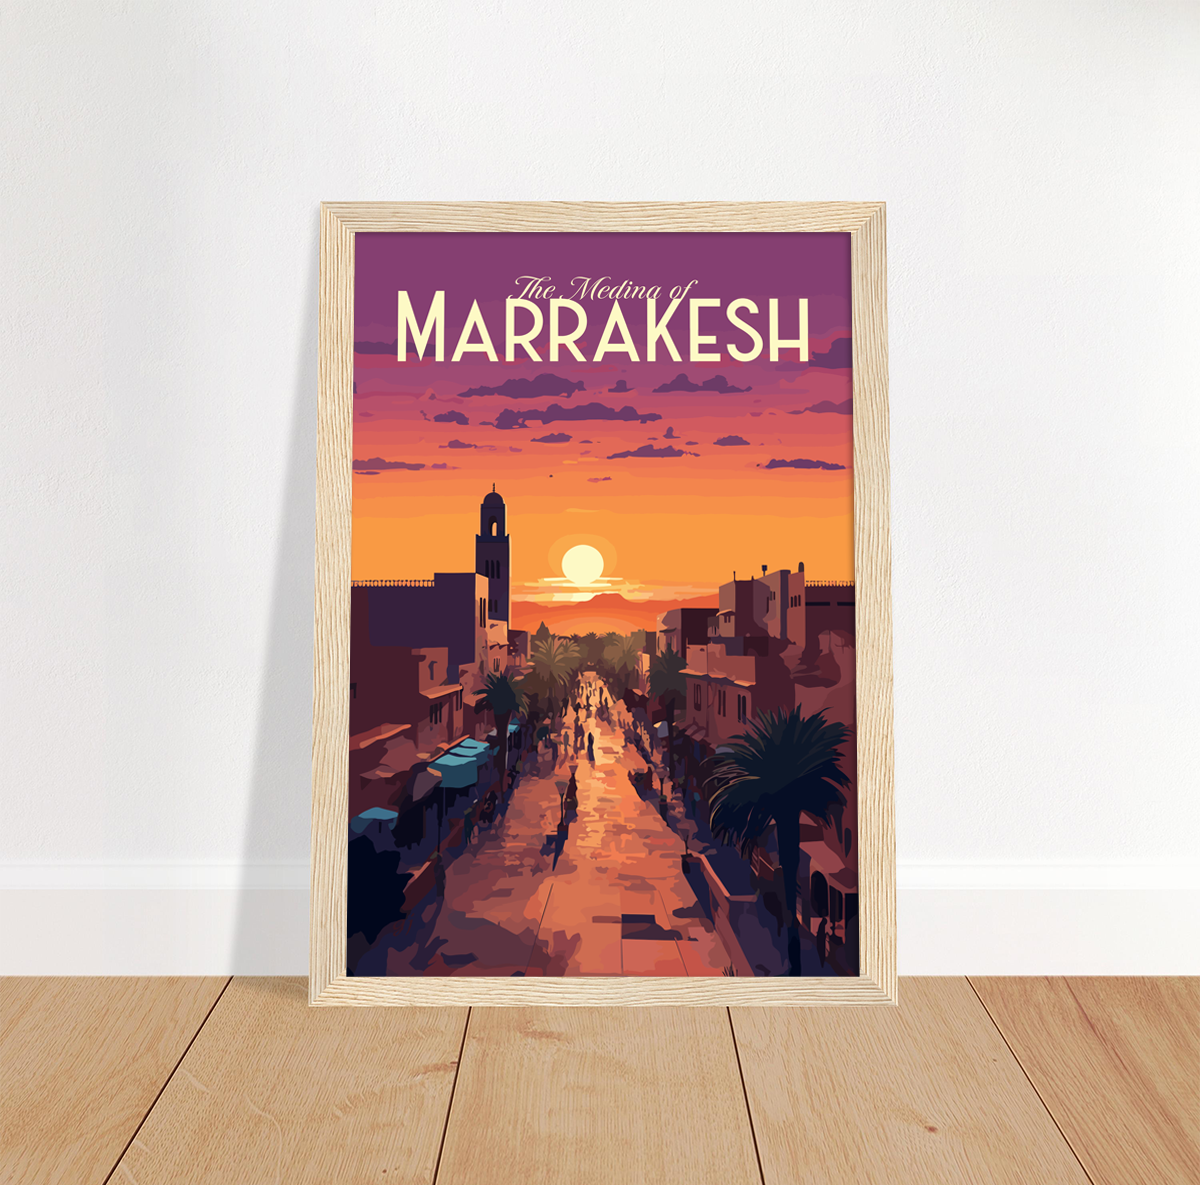 Marrakesh poster by bon voyage design